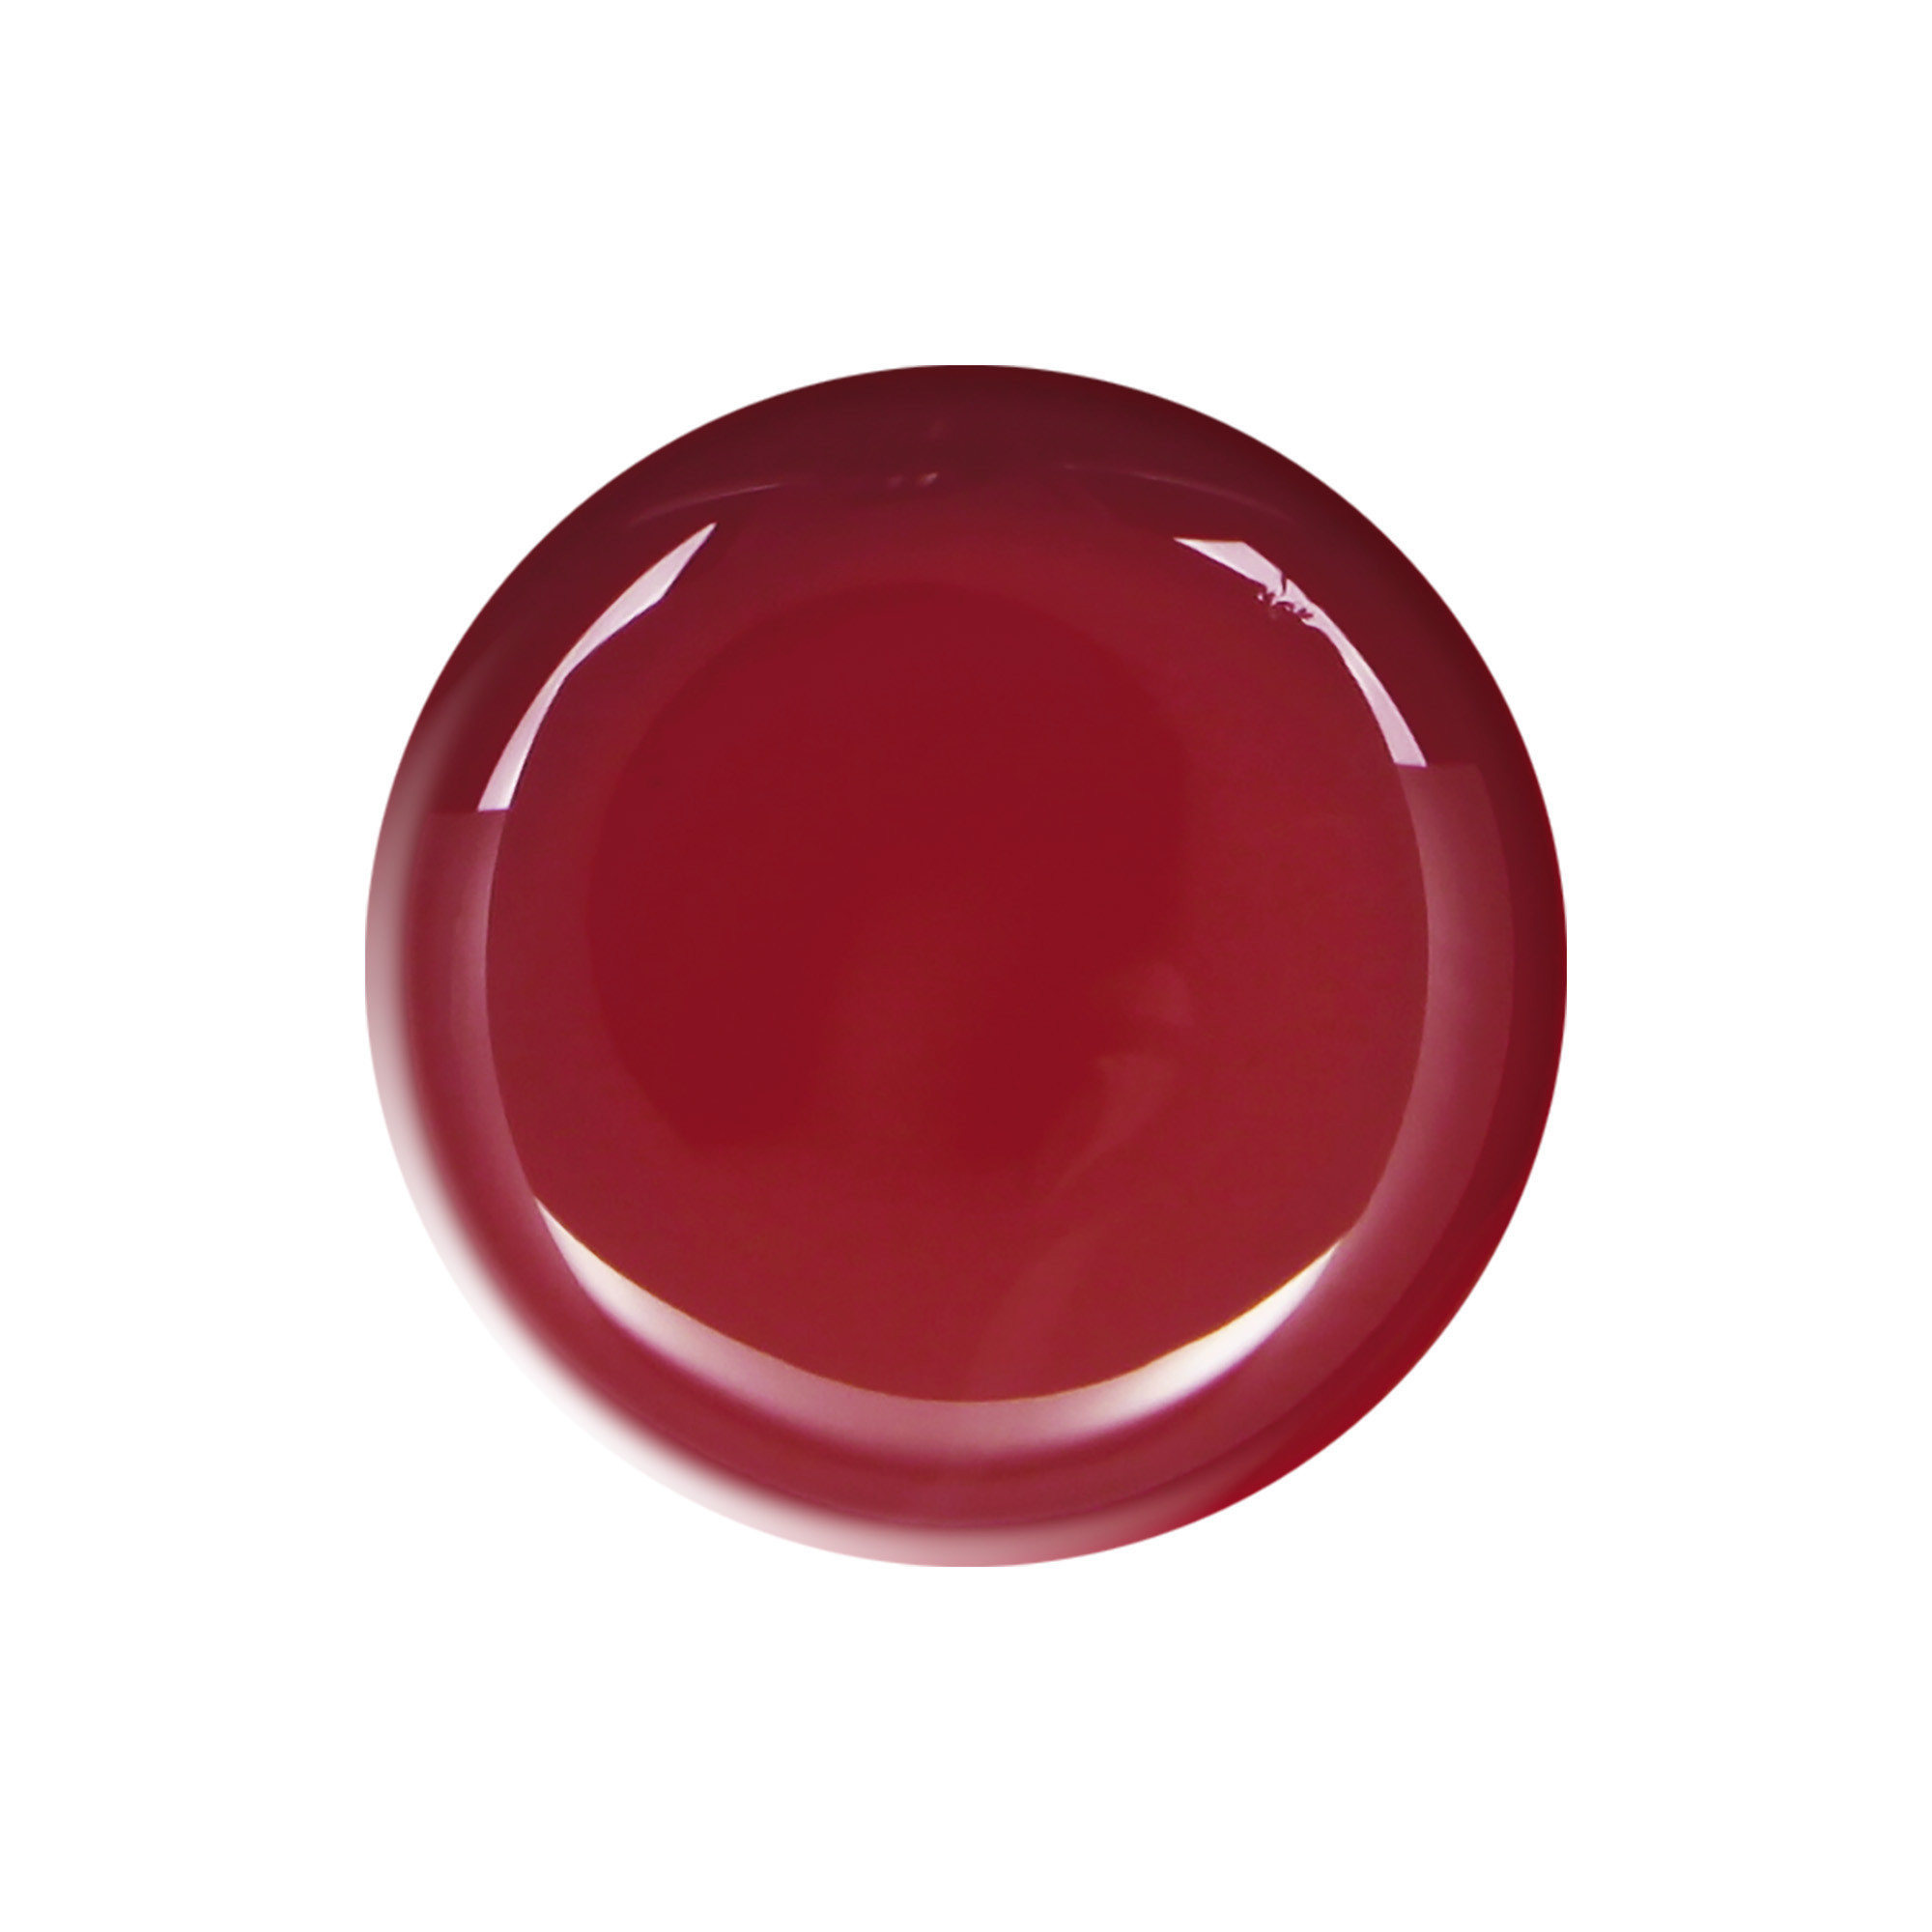 Smalto semipermanente rosso scuro Iconic Red 10 ml Laqerìs TNS